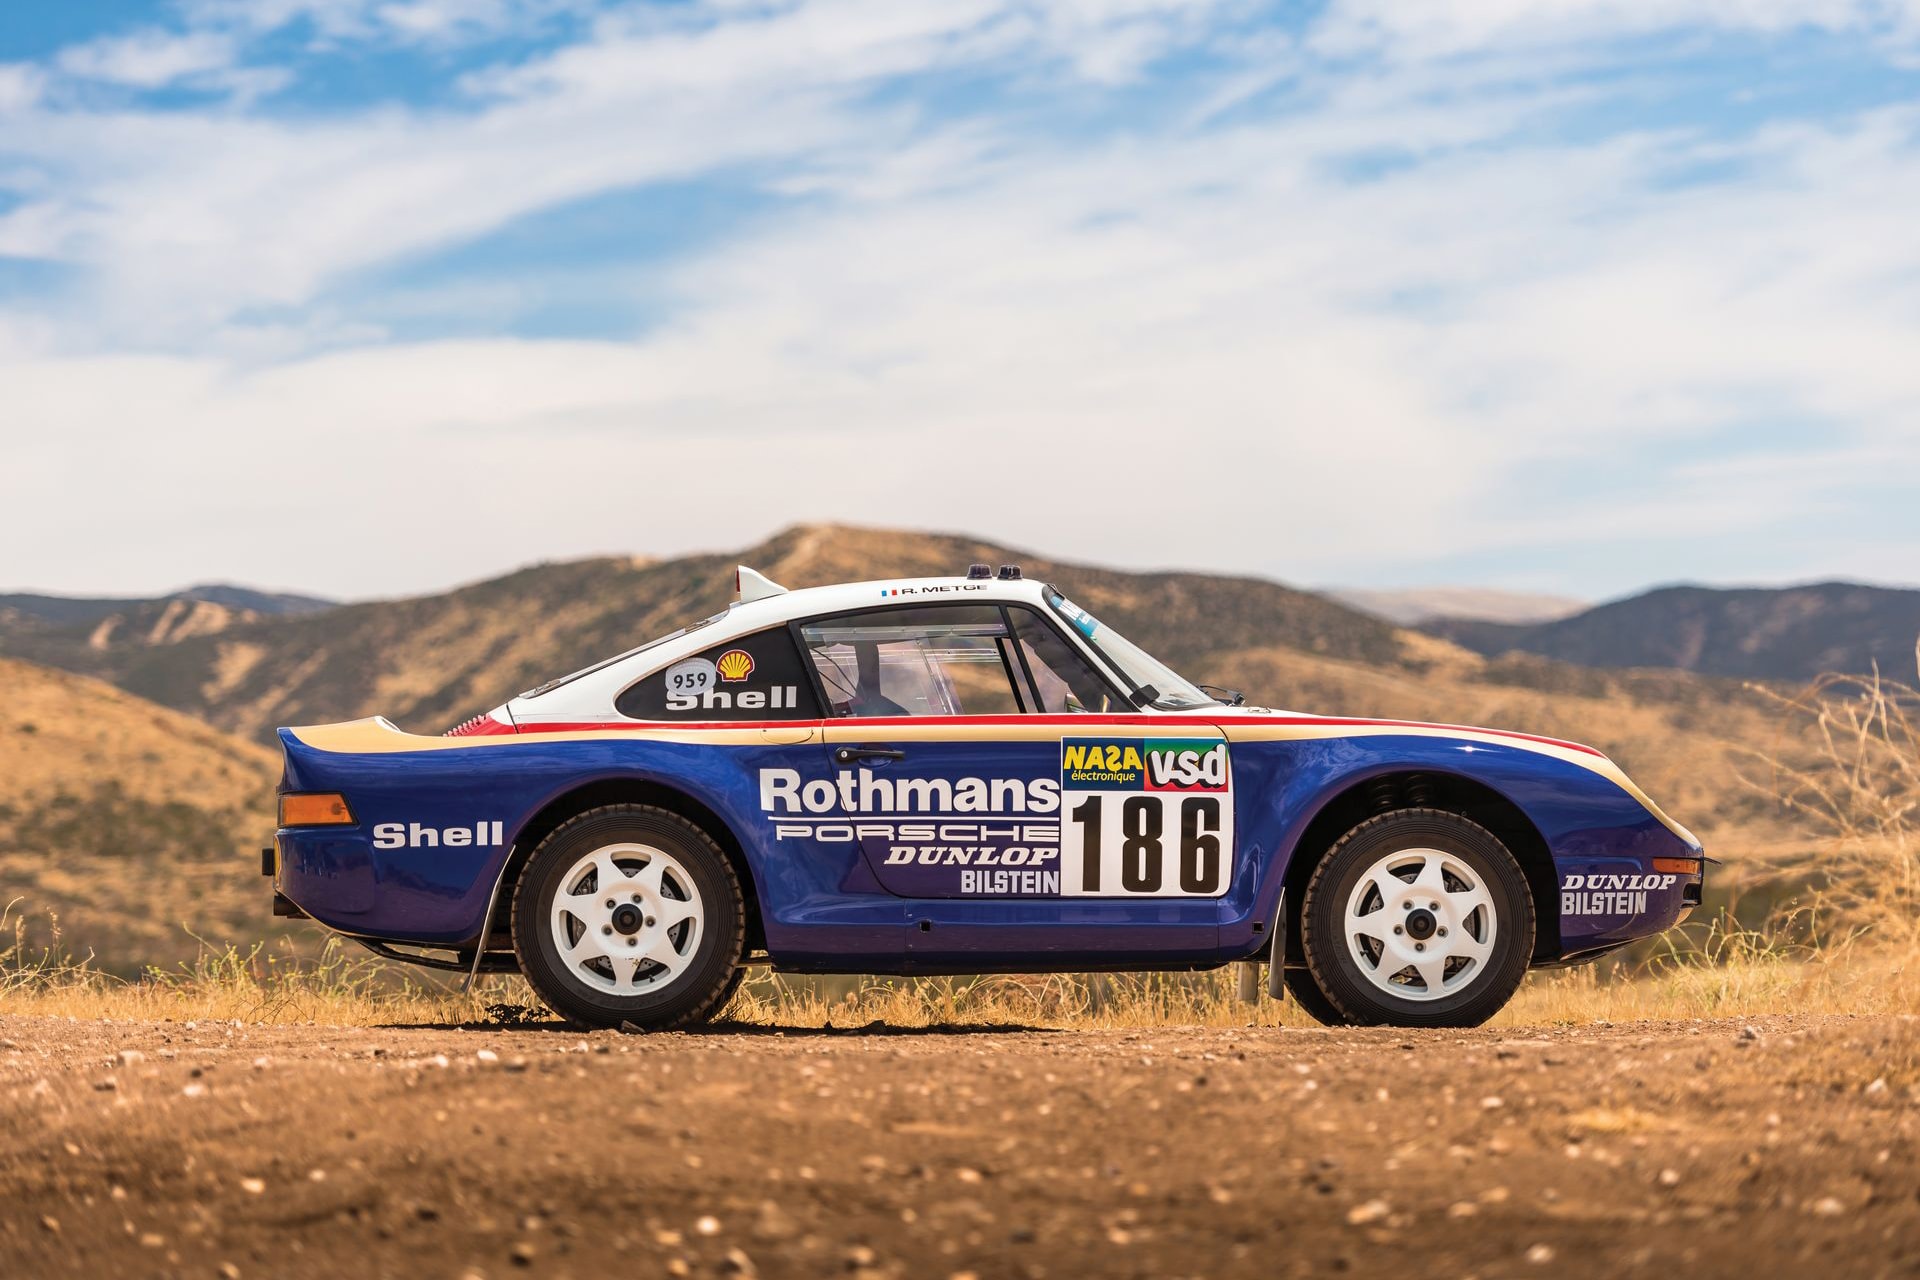 ダカールラリーで輝かしい成績を残した世界に6台しか存在しない Porsche 959 1980年代の「Porsche」の技術の結晶とも言える名車の価値は日本円に換算して…… 1980年後半に生産されたPorsche 959は、当時の「Porsche（ポルシェ）」が持つ技術を結集した1台である。本モデルはWRC（世界ラリー選手権）のグループBに参戦するために生産が開始されたものの、Henri Toivonen（ヘンリ・トイボネン）とSergio Cresto（セルジオ・クレスト）の死亡事故を筆頭に大惨事が相次ぎ、「FIA（国際自動車連盟）」が同カテゴリーの廃止およびホモロゲーション申請を受け付けない旨を発表したことで、当初の目的からの進路変更を余儀なくされる。だが、世界一過酷なモータースポーツ競技とも言われる「ダカール・ラリー」の参戦で輝かしい戦績を残し、それに伴う名声の獲得から1986年に市販化されるにまで至ったのだ。  市販モデルは最高出力450PS/6,500rpm、トルク51.0kgm/5,500rpmを発揮するエンジンを搭載。これはシリンダーヘッドのみ水冷の半空冷式水平対向6気筒935/82型エンジンをベースに、公道での使用に耐えられる改良を加えたものである。だが、本稿で取り上げているパリダカールモデルは6台しか製造されなかったモデルは走行性能を高める調節可能なサスペンションに全地形ホイールを履くことで、足回りがダカール仕様の設計となっているのだ。  ラリー感のある外装デザインやバケットシートなど、911とは似て非なるSSS級の希少価値を持つPorsche 959は、10月27日（現地時間）にアトランタで開催される「RM Sotheby」に出品される予定で、推定落札価格は3億5,000万円前後にもおよぶとのこと。今後お目にかかれる可能性も低いので、是非この機会に上のフォトギャラリーからその唯一無二のデザインをチェックしてみてはいかがだろうか。  Robert Downey Jr.（ロバート・ダウニー・ジュニア）が購入した1970年産のMustang Boss 302や、GT-Rの50周年を記念する限定プロトタイプ車など、その他の自動車関連ニュースもあわせてご確認を。